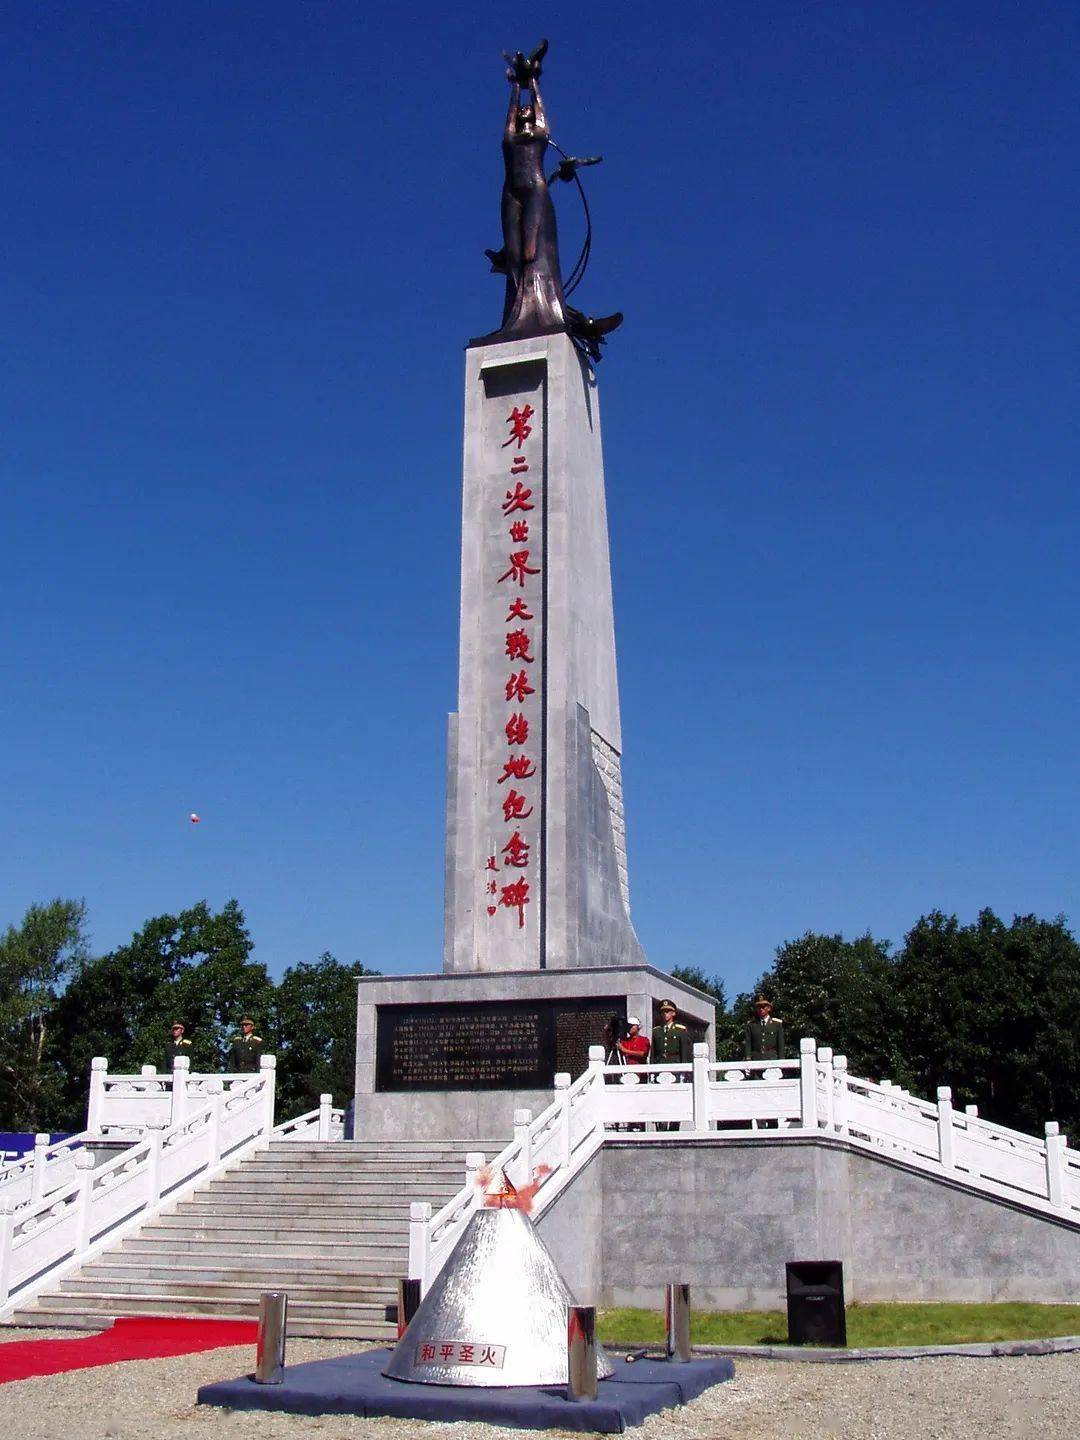 线路名称:鸡西北大荒纪念馆红色之旅2日游线路行程:鸡西—农垦当壁镇